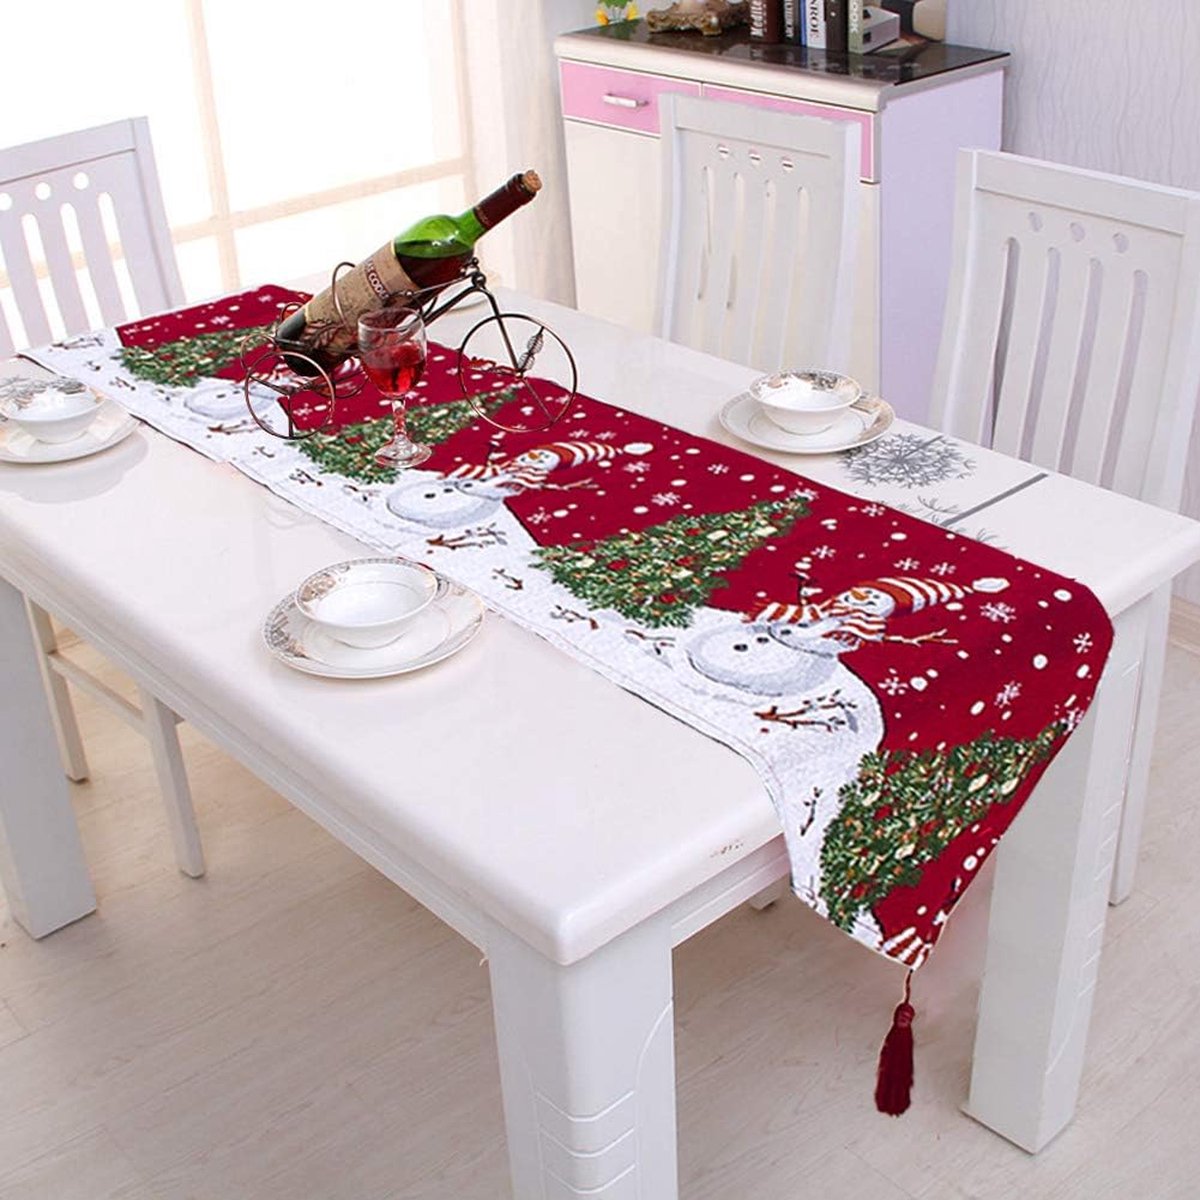 Kerst tafelloper tafelkleed decoratie katoen linnen klassiek tafelkleed mat voor eetkamer party vakantie decoratie (rood, 34 * 180 cm)